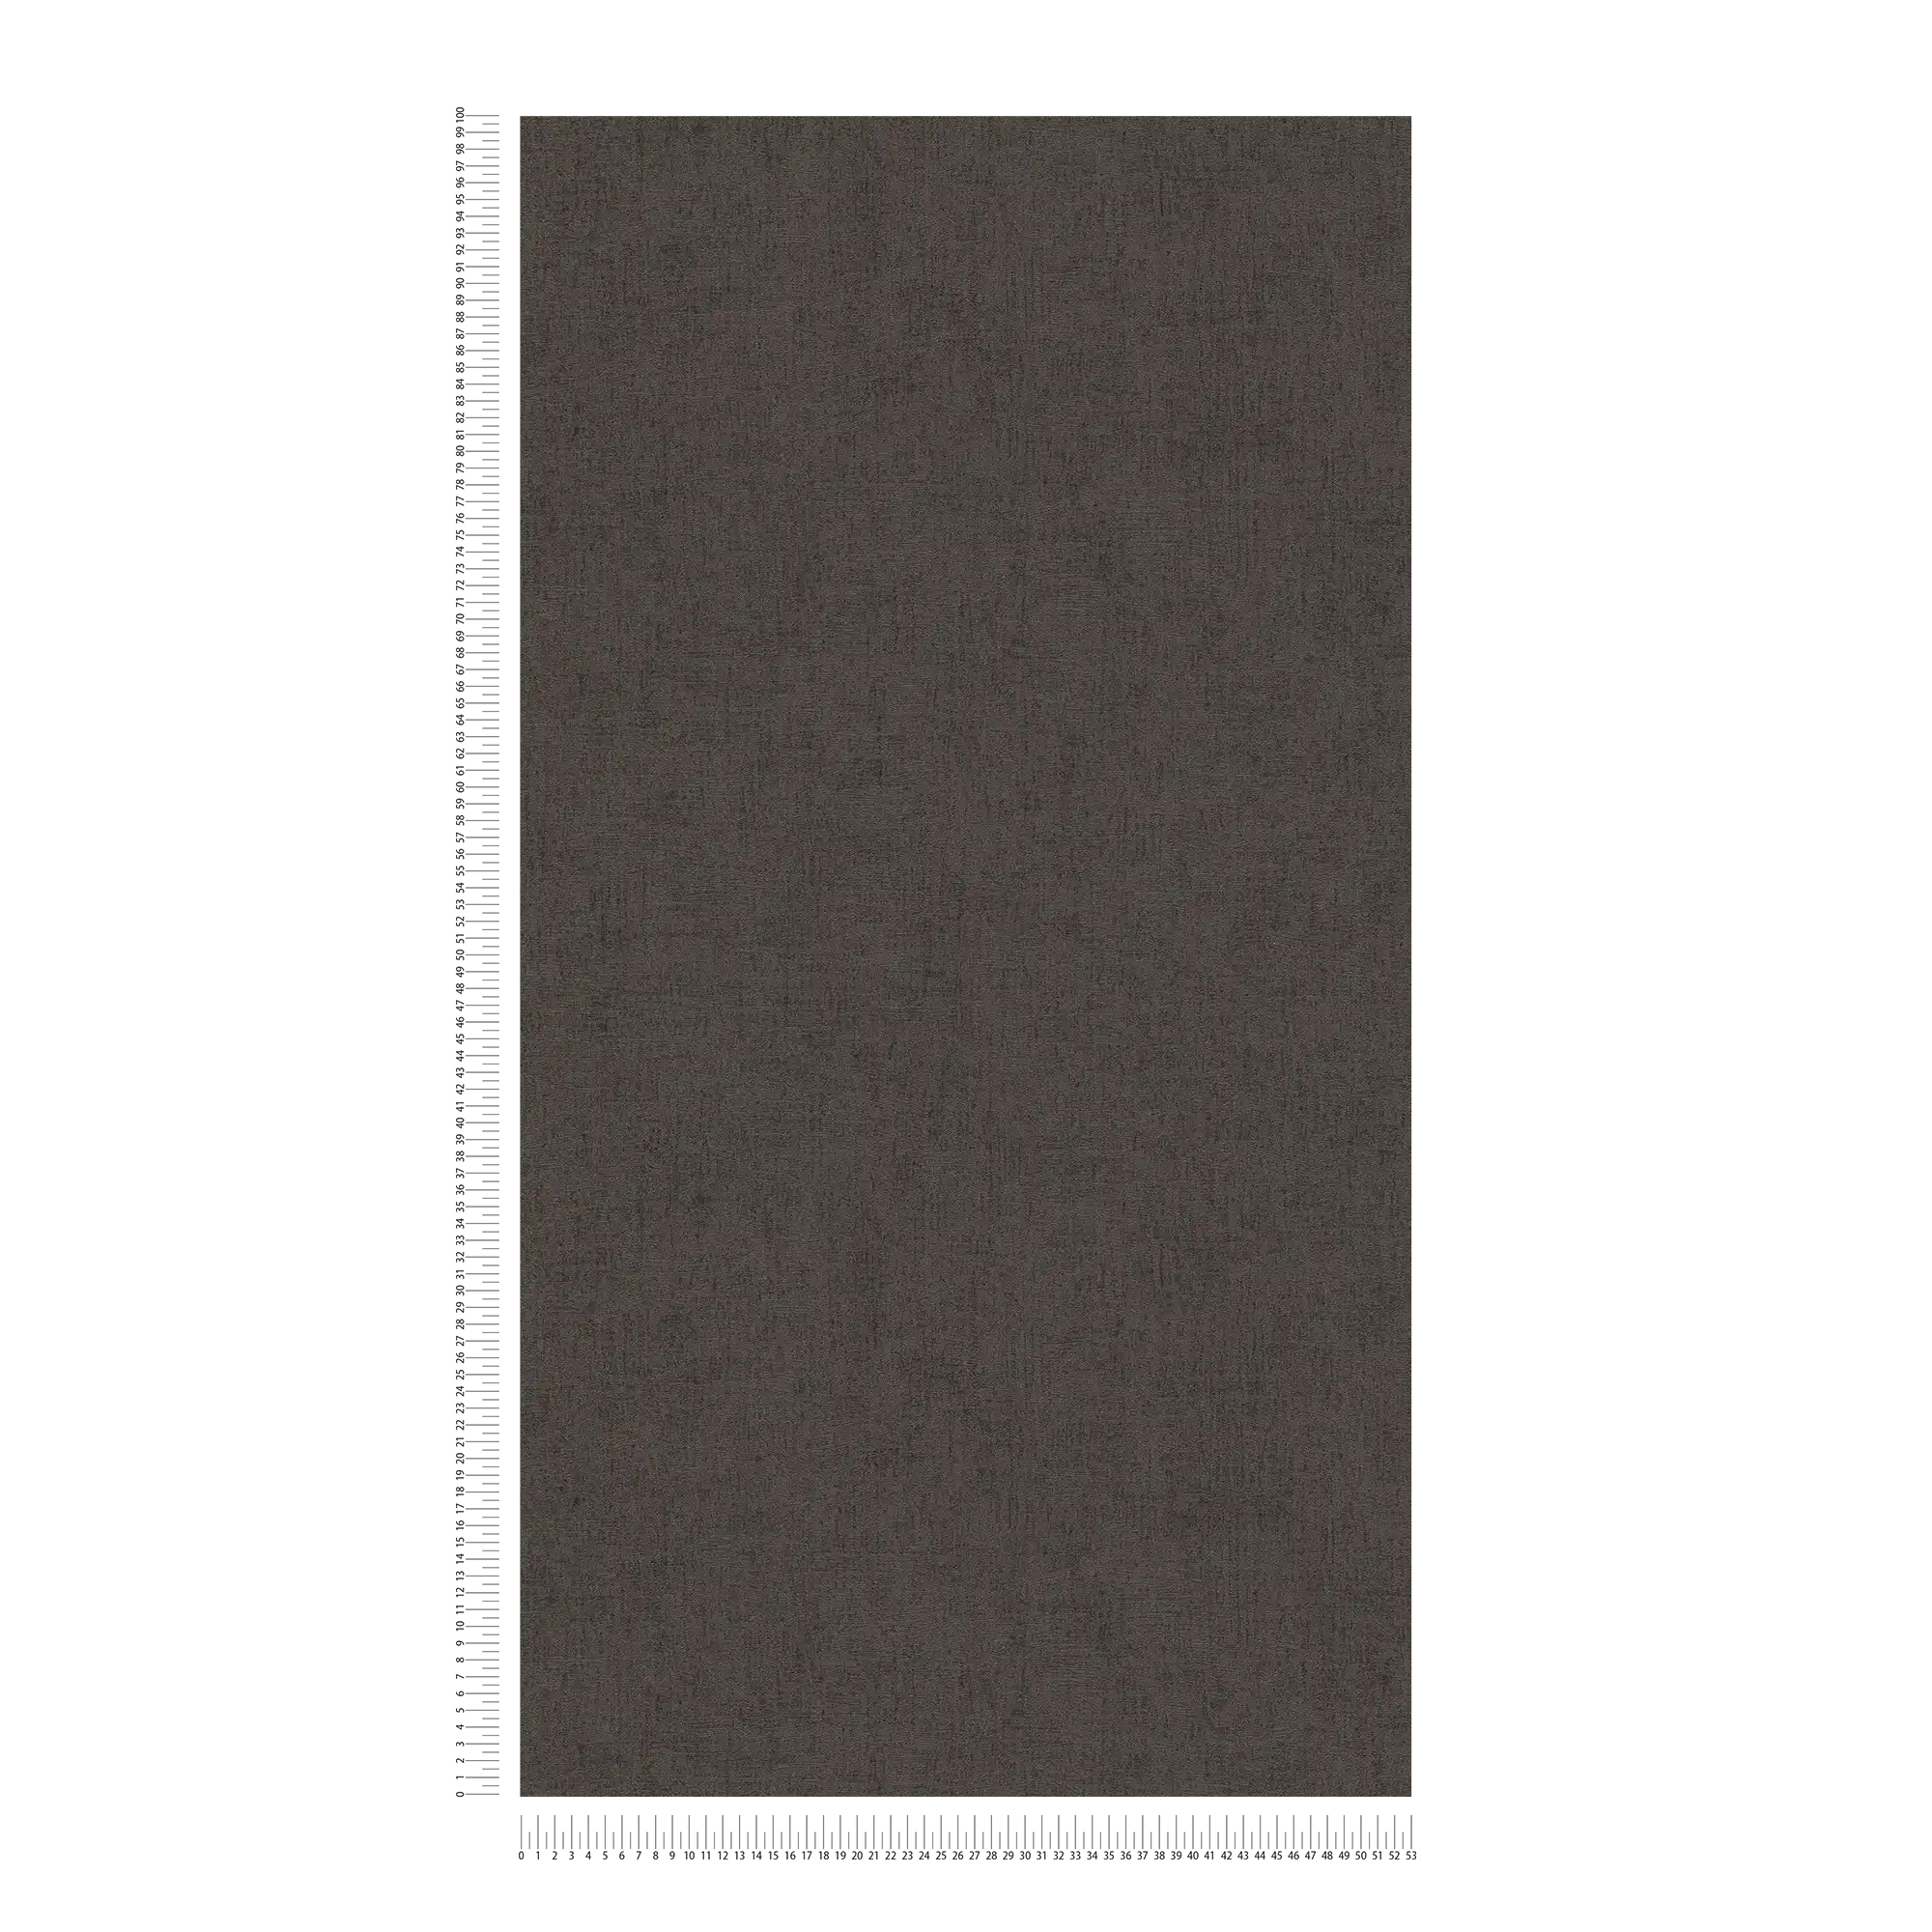             Carta da parati marrone scuro con effetto lucido e metallizzato - marrone, metallizzato
        